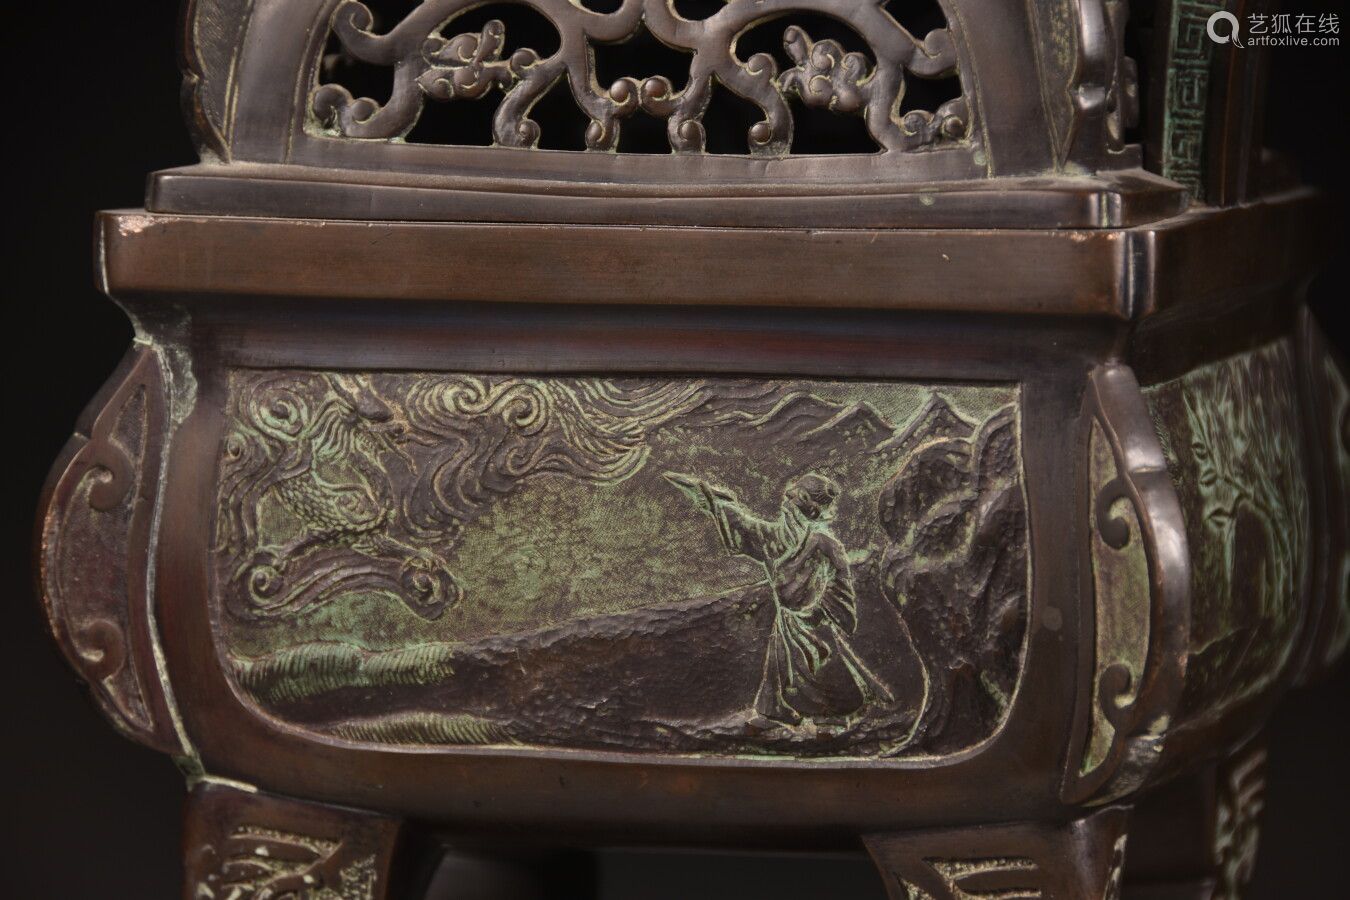 中国 19世纪末青铜长方形双柄香炉 有褐色铜锈 微微浮雕装饰 背景为一智者与一龙 一仙人与一龟 一鸟与花枝 盖子上镂空的云朵 握柄为一狗形的佛像 H 33 5厘米 Deal Price Picture